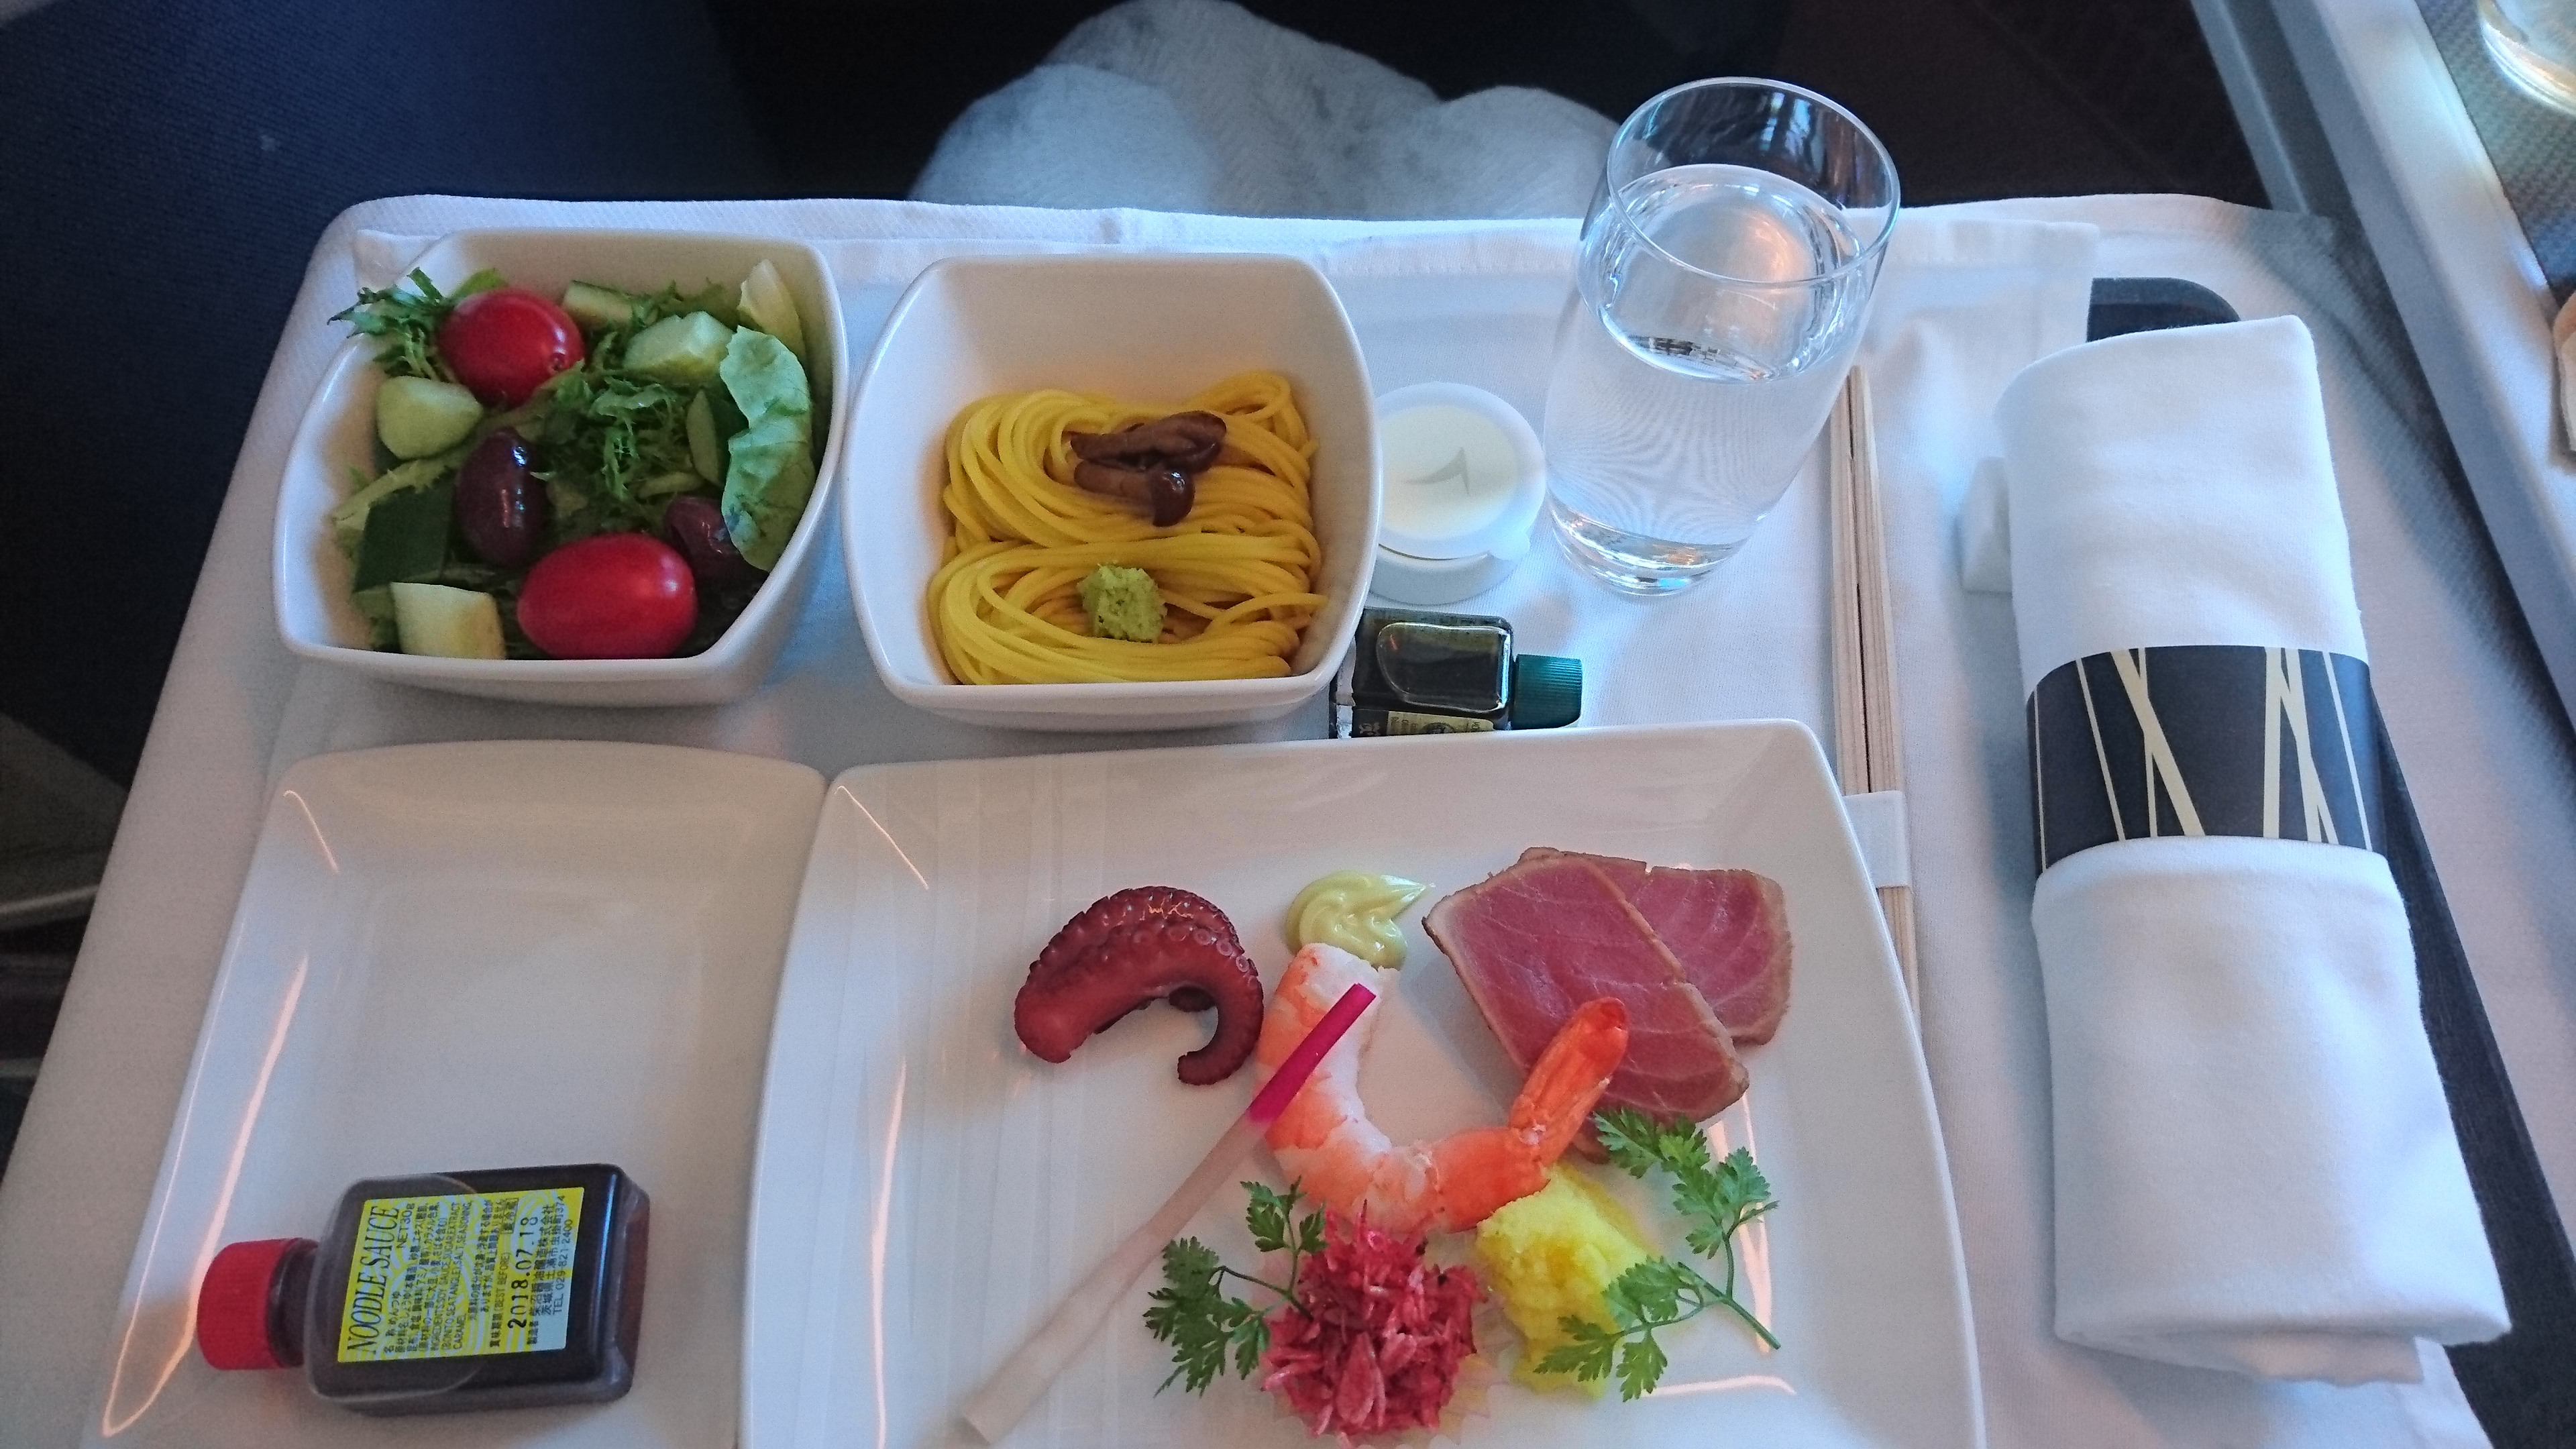 キャセイパシフィック Cx500 香港 成田 ビジネスクラス 機内食 29may18 飛行機とjalマイルとビジネスクラスの旅ブログ